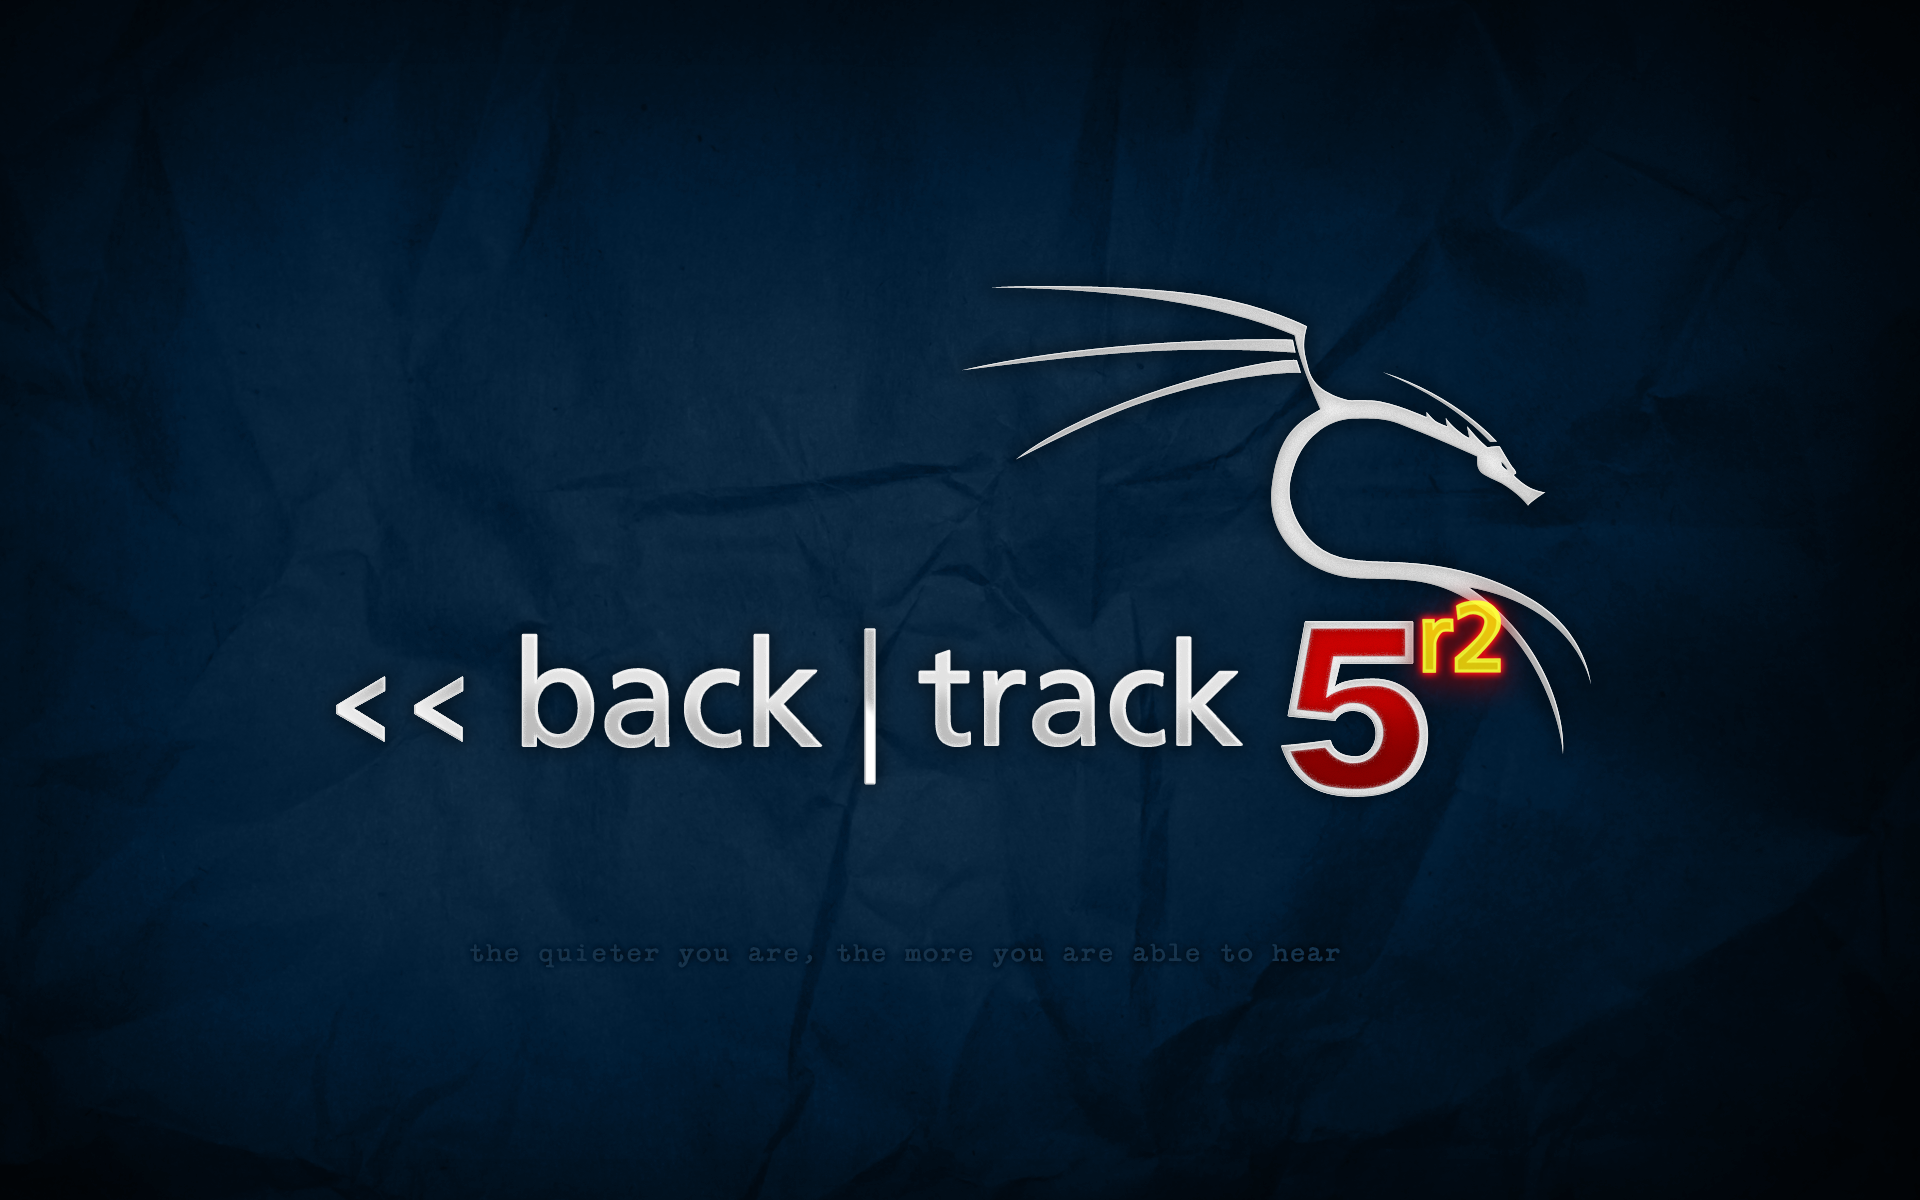 backtrack-5r2-blue.png